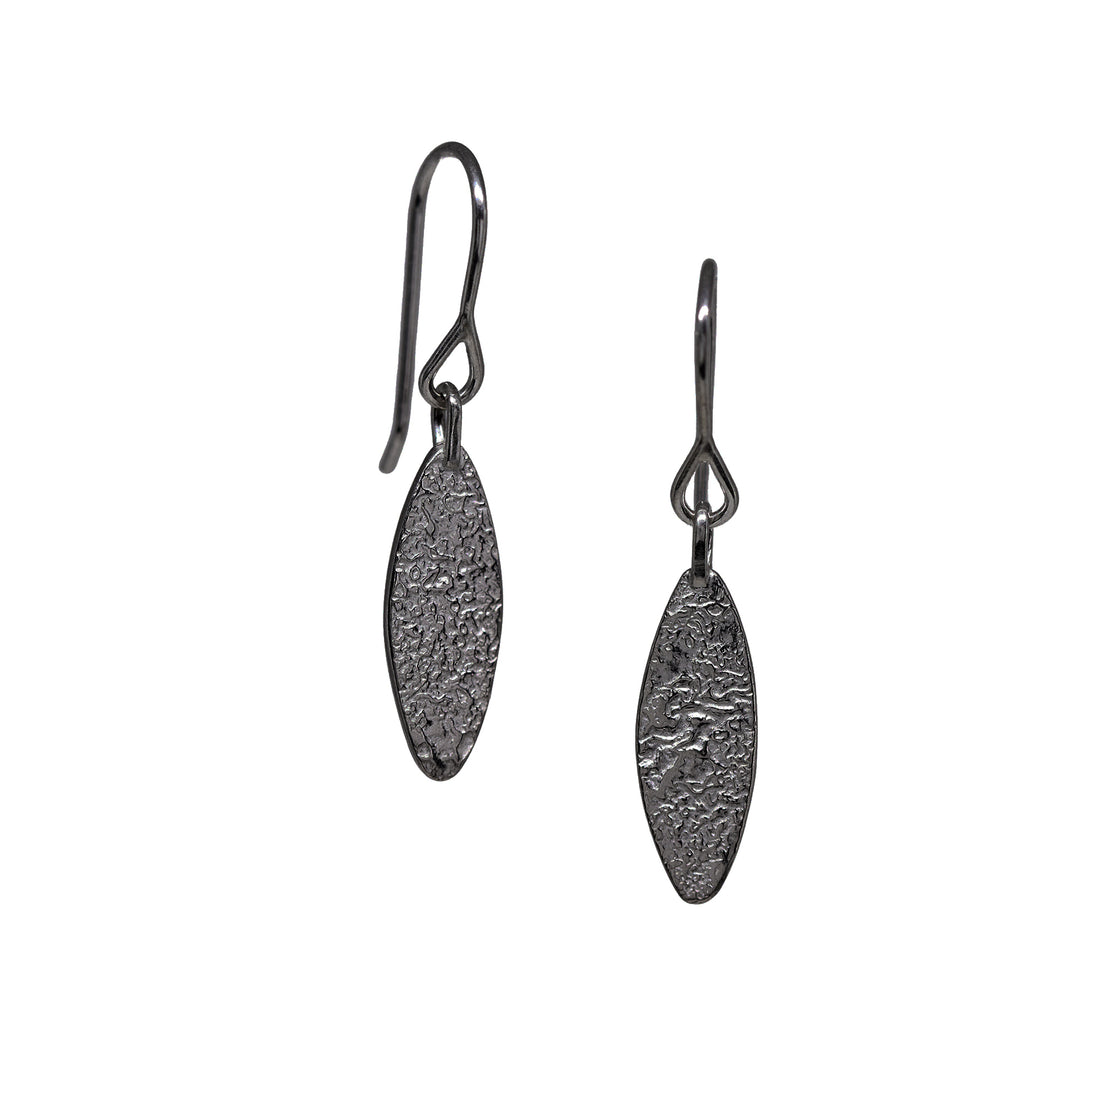 Basalt Earrings - Small - Dark Sterling